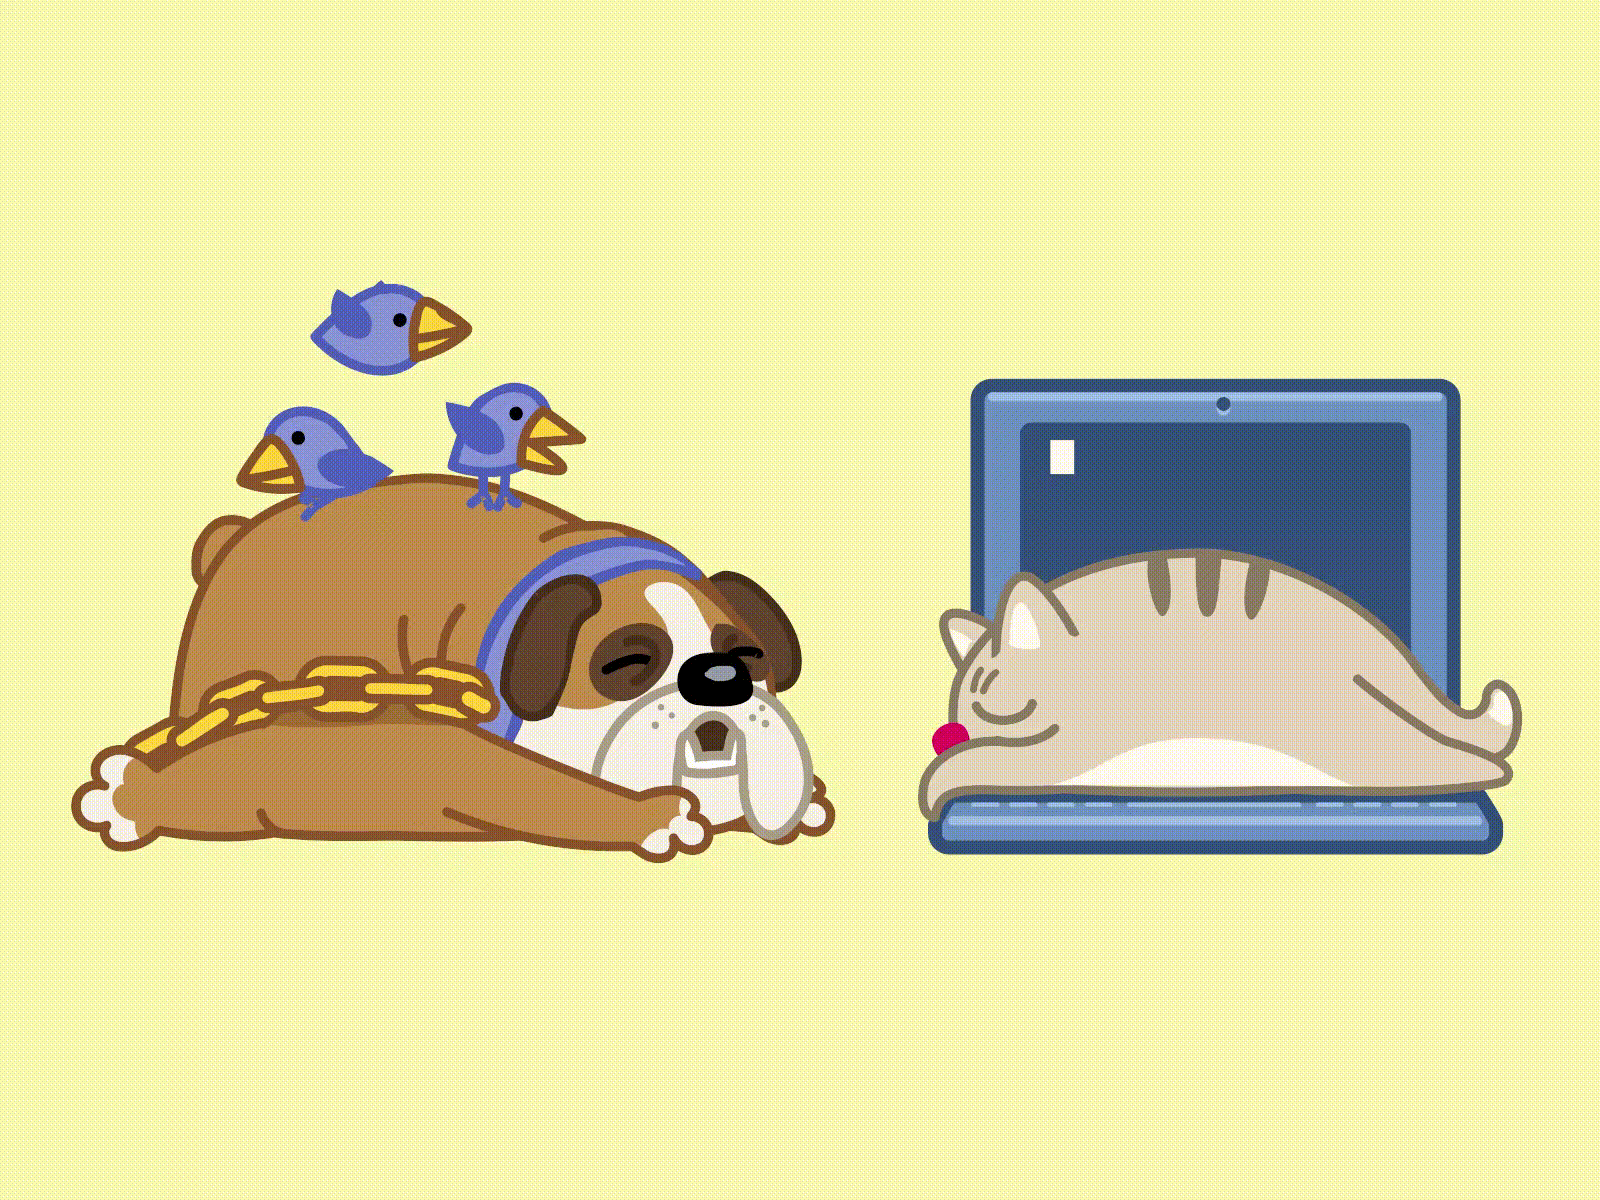 Анимация Спящие собака, на которой прыгают птички и серый котик, лежащий на ноутбуке, автор Denis Sazhin, гифка Спящие собака, на которой прыгают птички и серый котик, лежащий на ноутбуке, автор Denis Sazhin